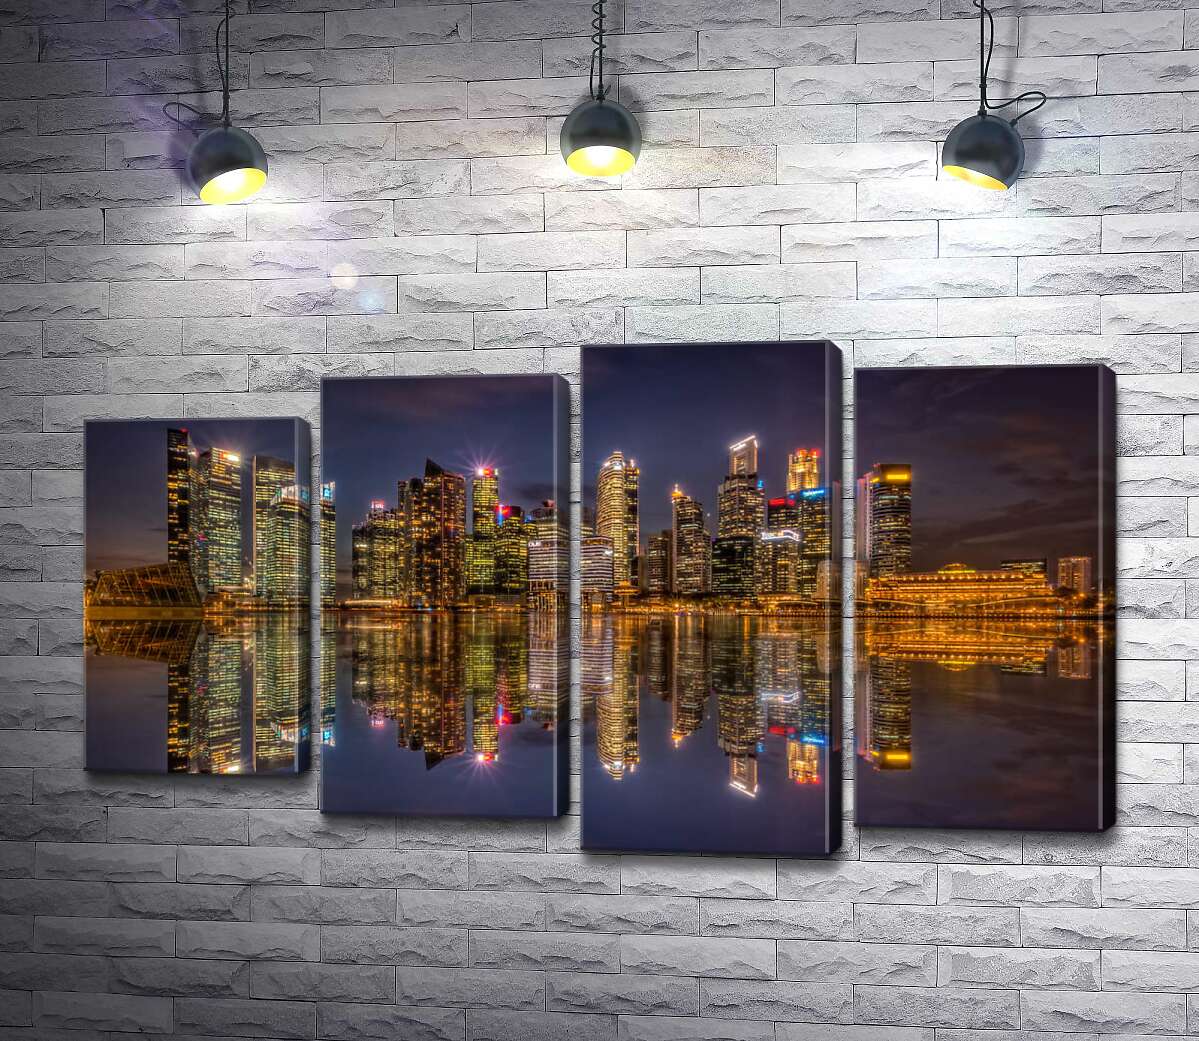 

Модульная картина ArtPoster Зеркальные отражения ночных домов у набережной Сингапура 100x59 см Модуль №21